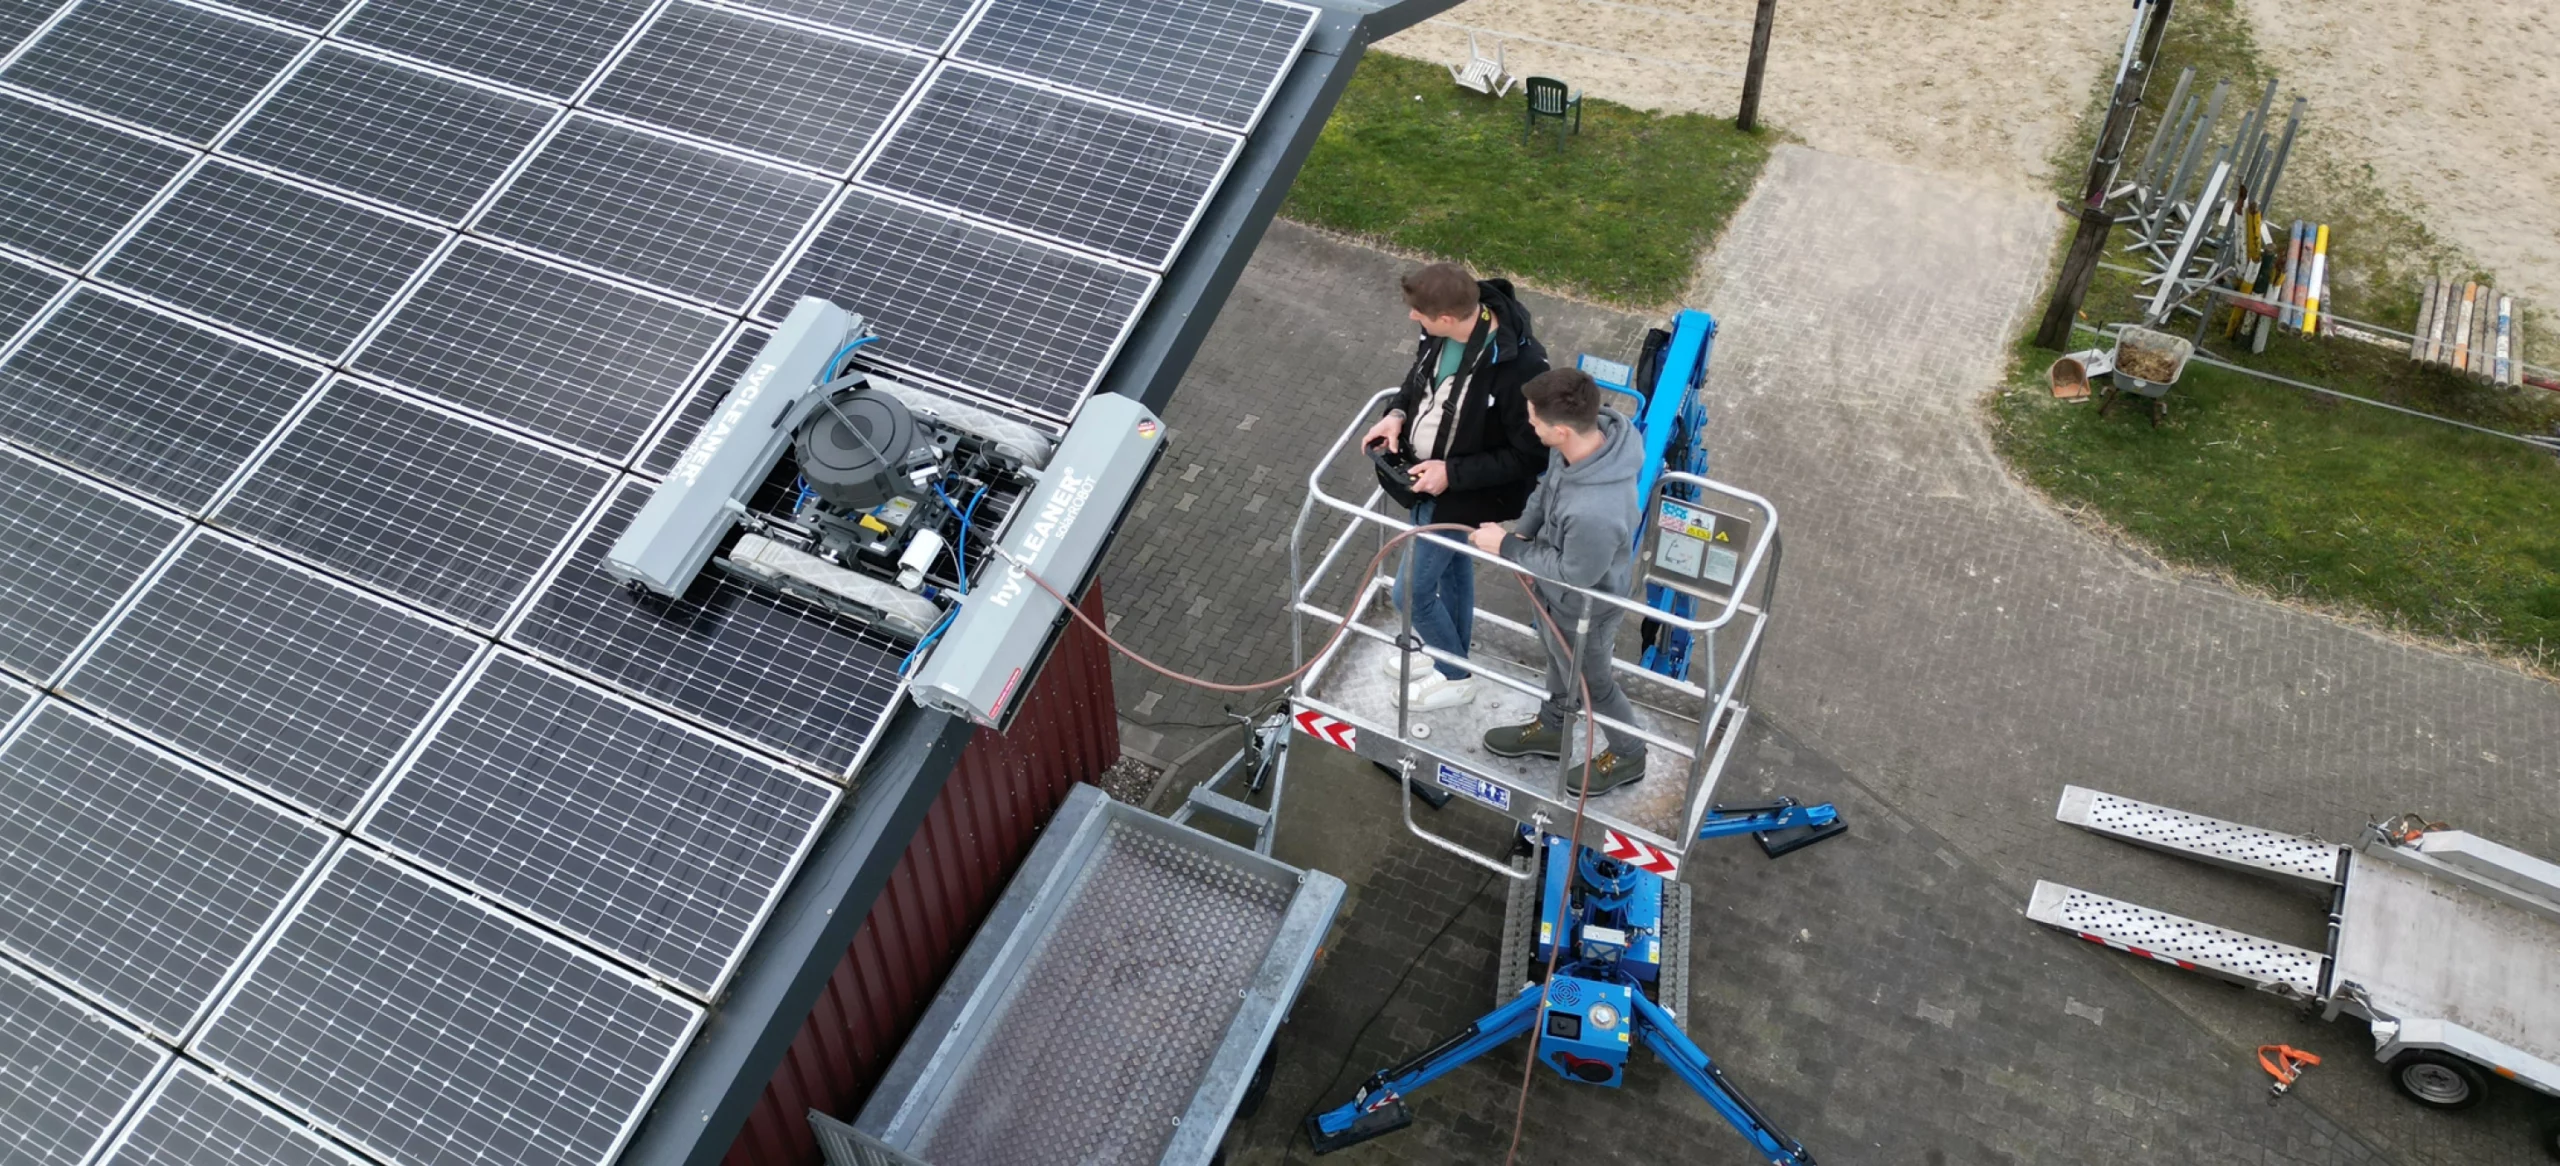 Nettoyage de panneaux solaires par le haut avec le robot de nettoyage PV solarROBOT